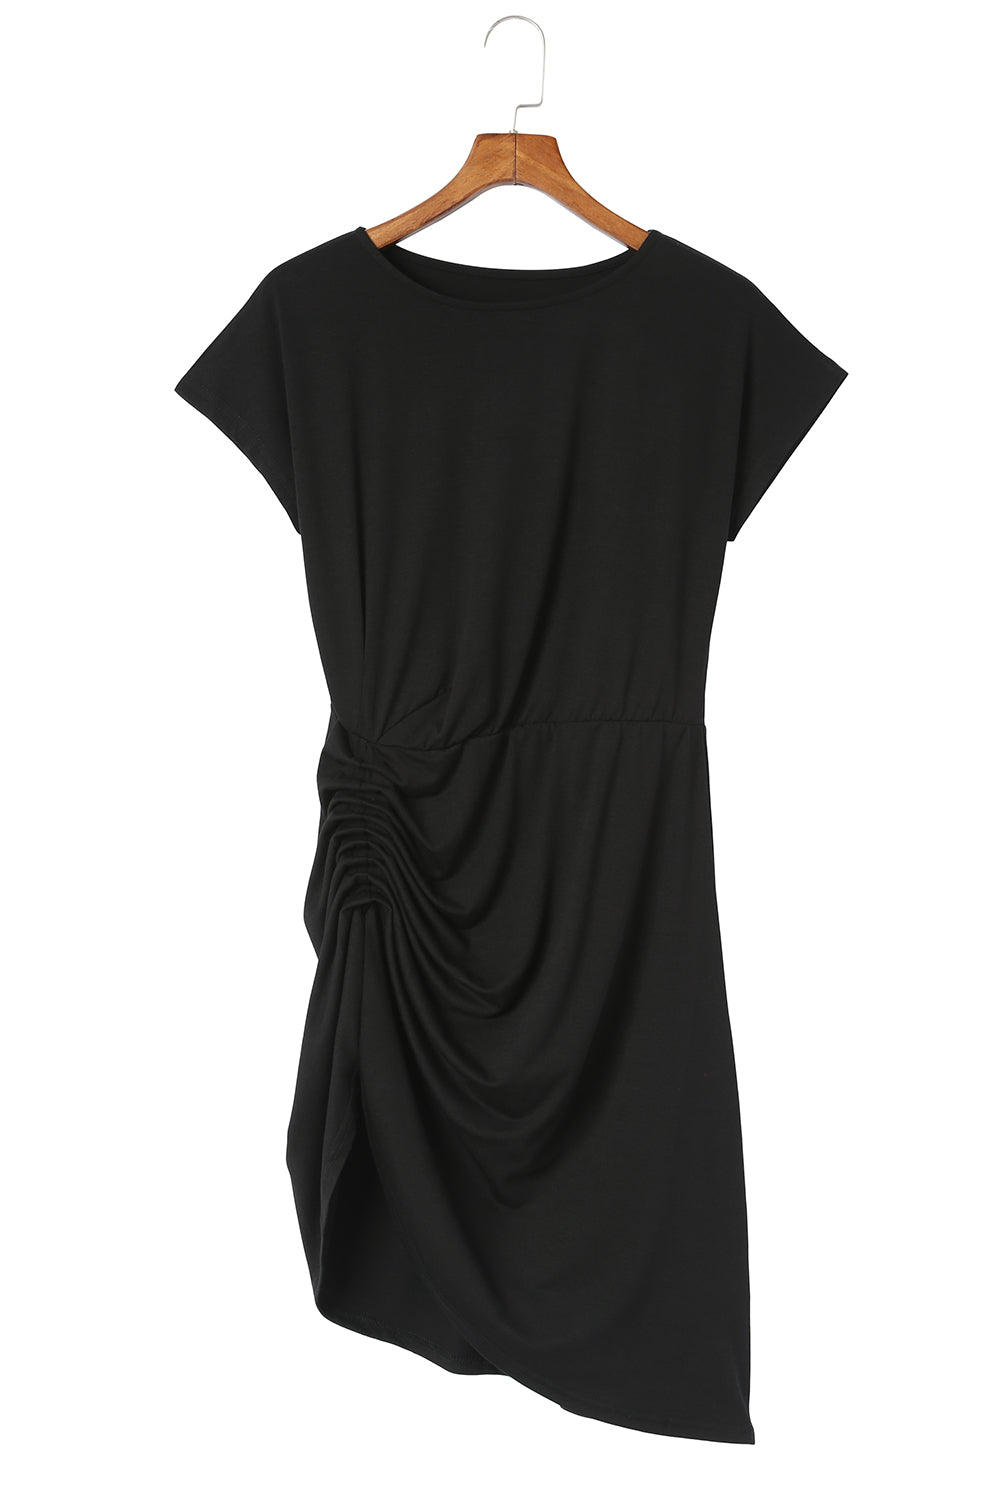 Mini-robe noire à manches courtes et fronces latérales